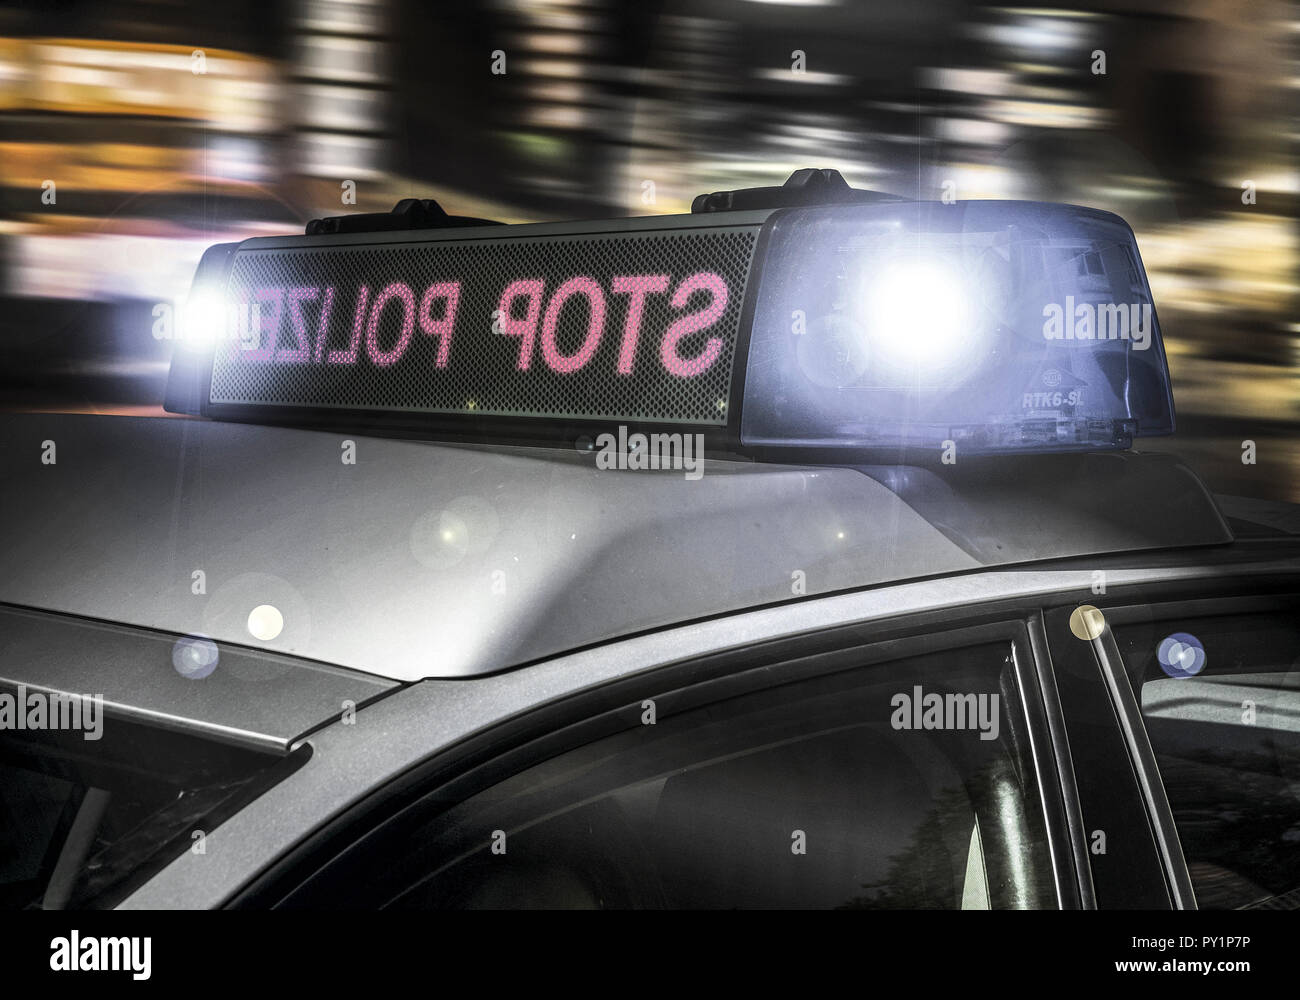 Arresto Aufforderung Polizei auf Polizeiauto Foto Stock